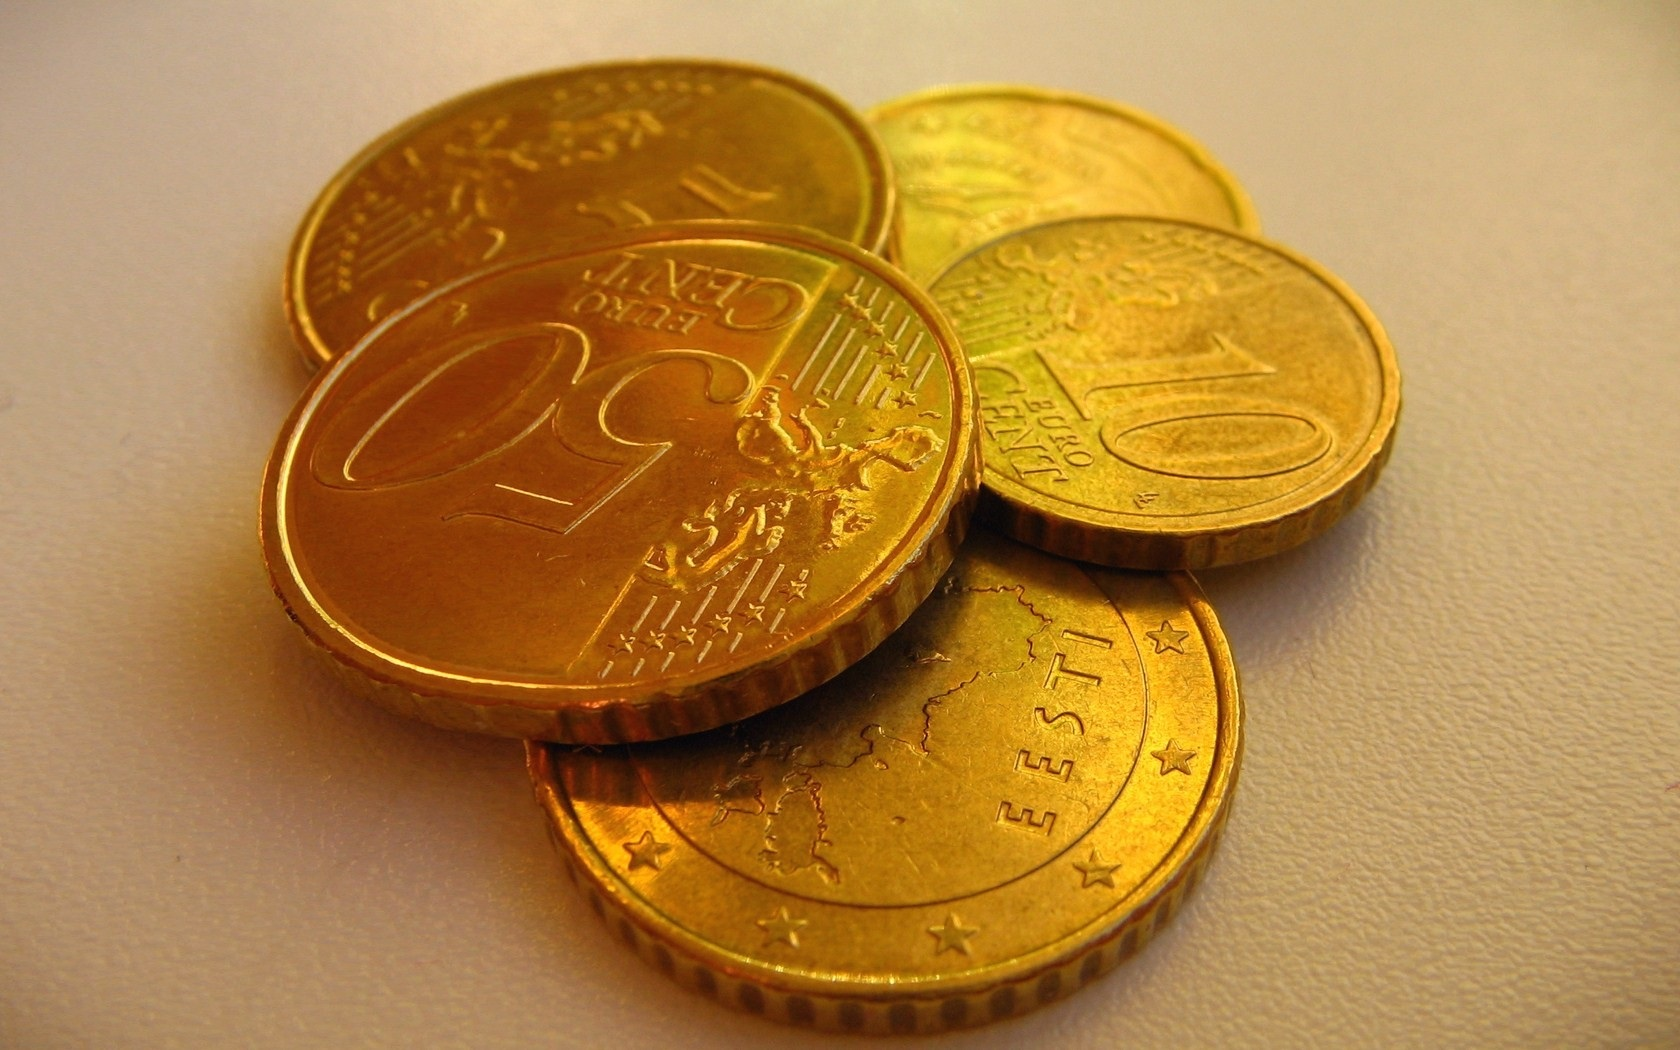 德国欧洲硬币 库存图片. 图片 包括有 财富, 欧洲, 更改, 硬币, 欧元, 德国, 货币, 商业, 财务 - 46017255